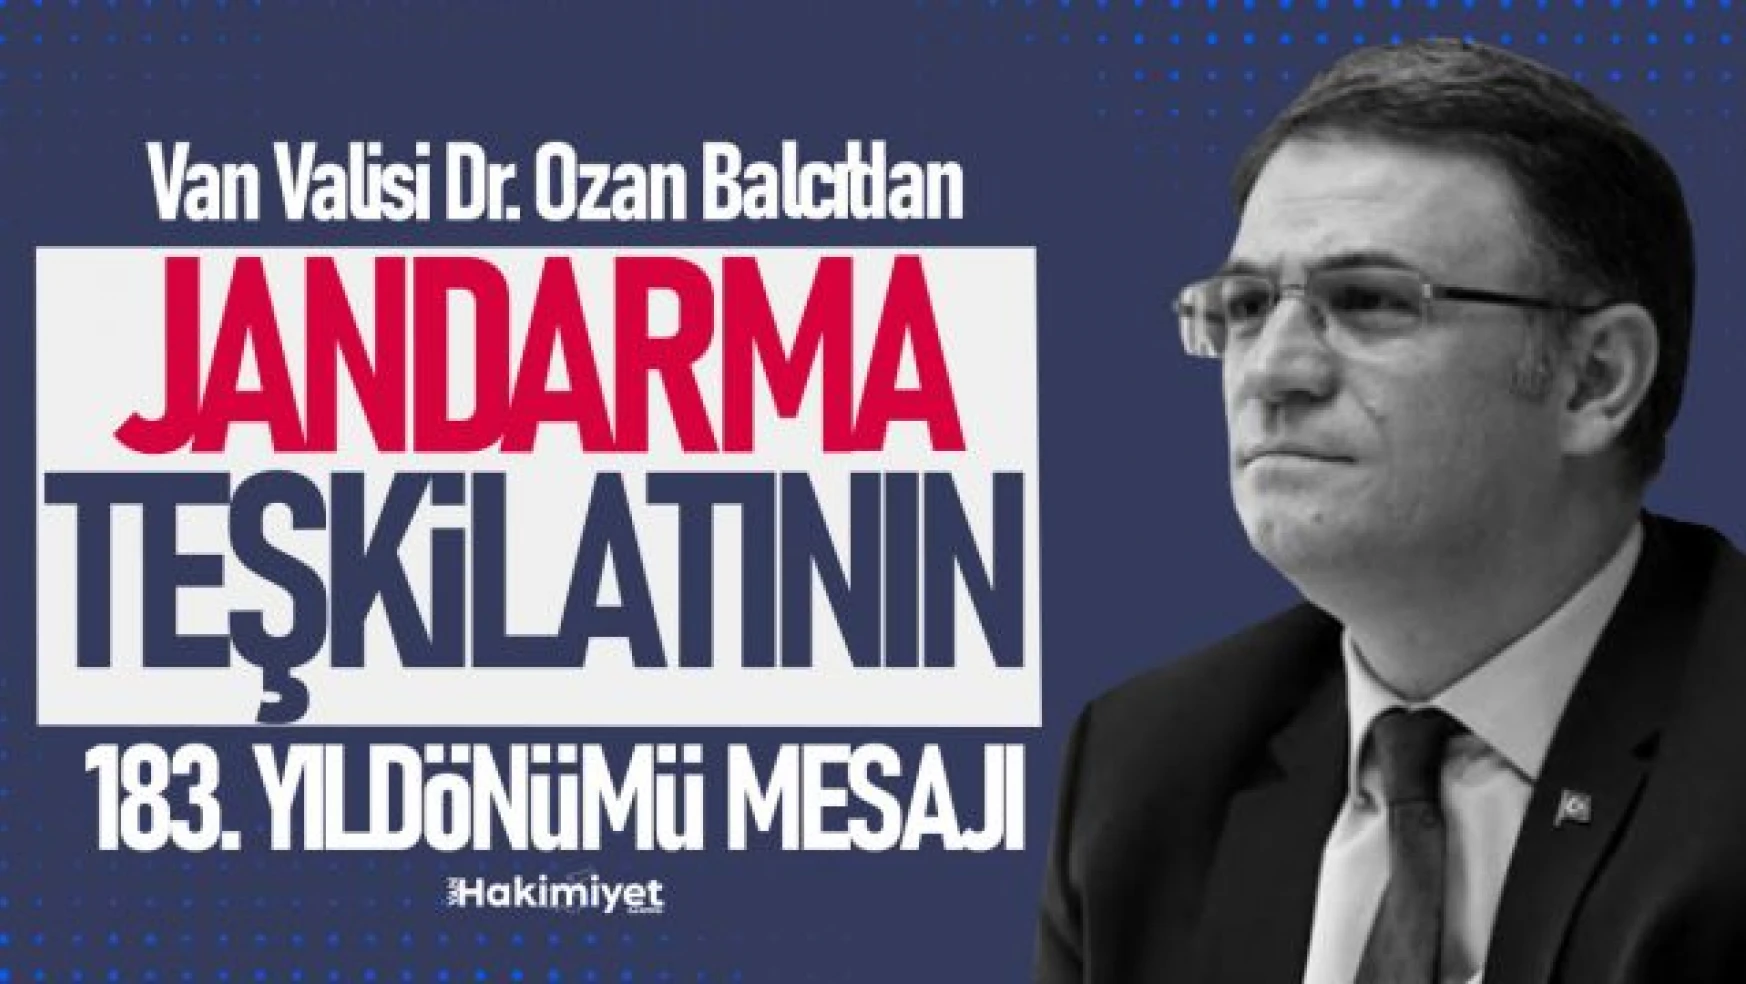 Van Valisi Dr. Ozan Balcı'nın Jandarma Teşkilatı'nın 183. Yıldönümü Mesajı